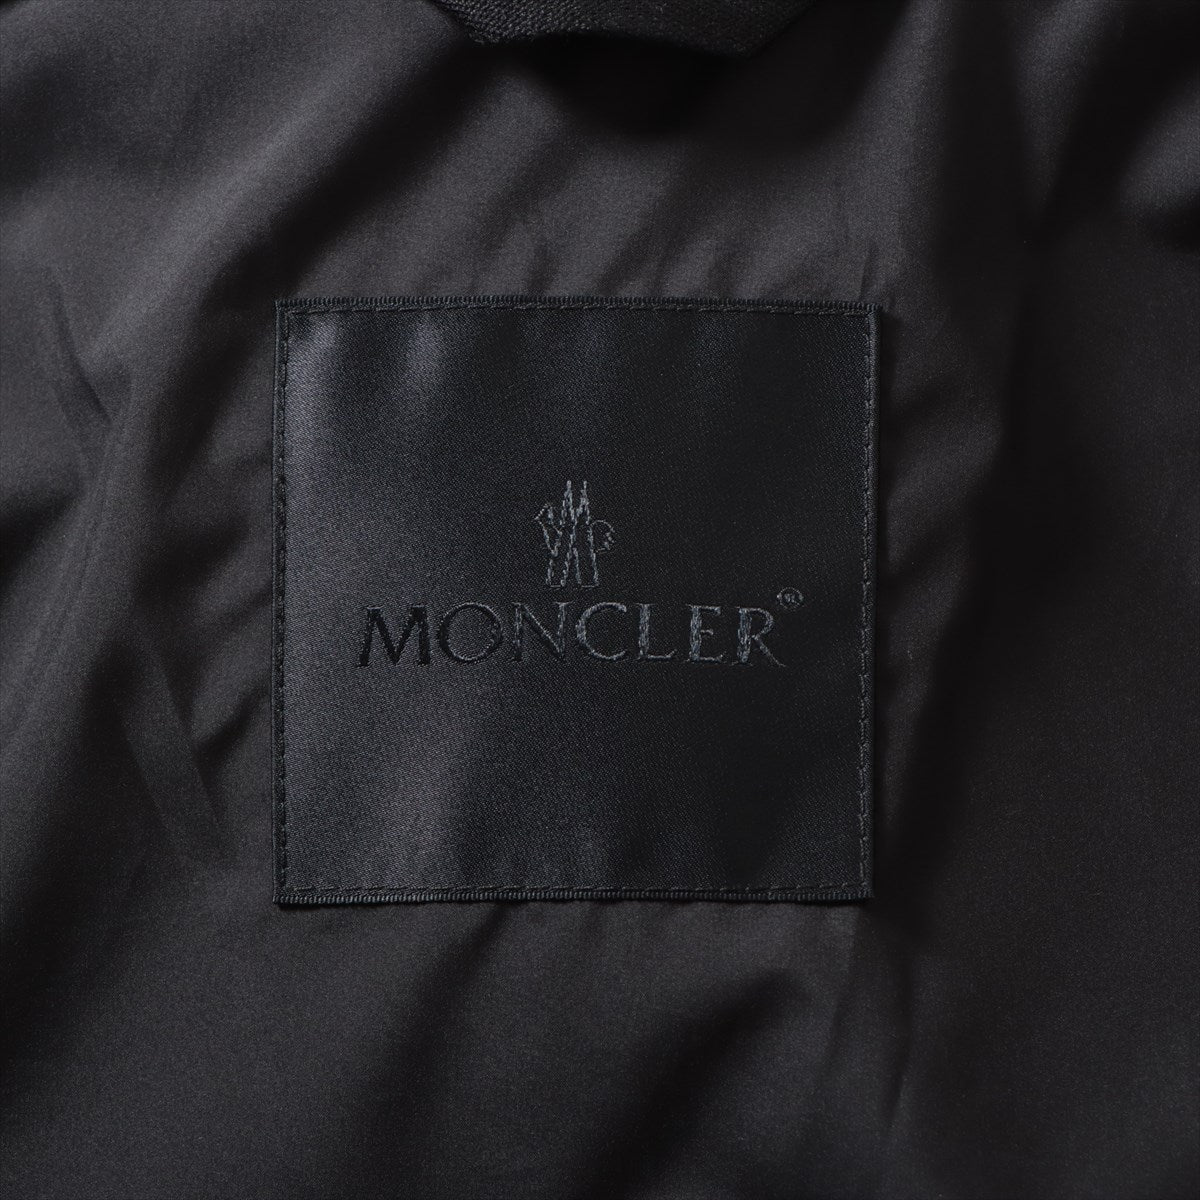 Moncler 23 years Cotton & Polyester Down jacket 1 Men's Black  GALINHAS